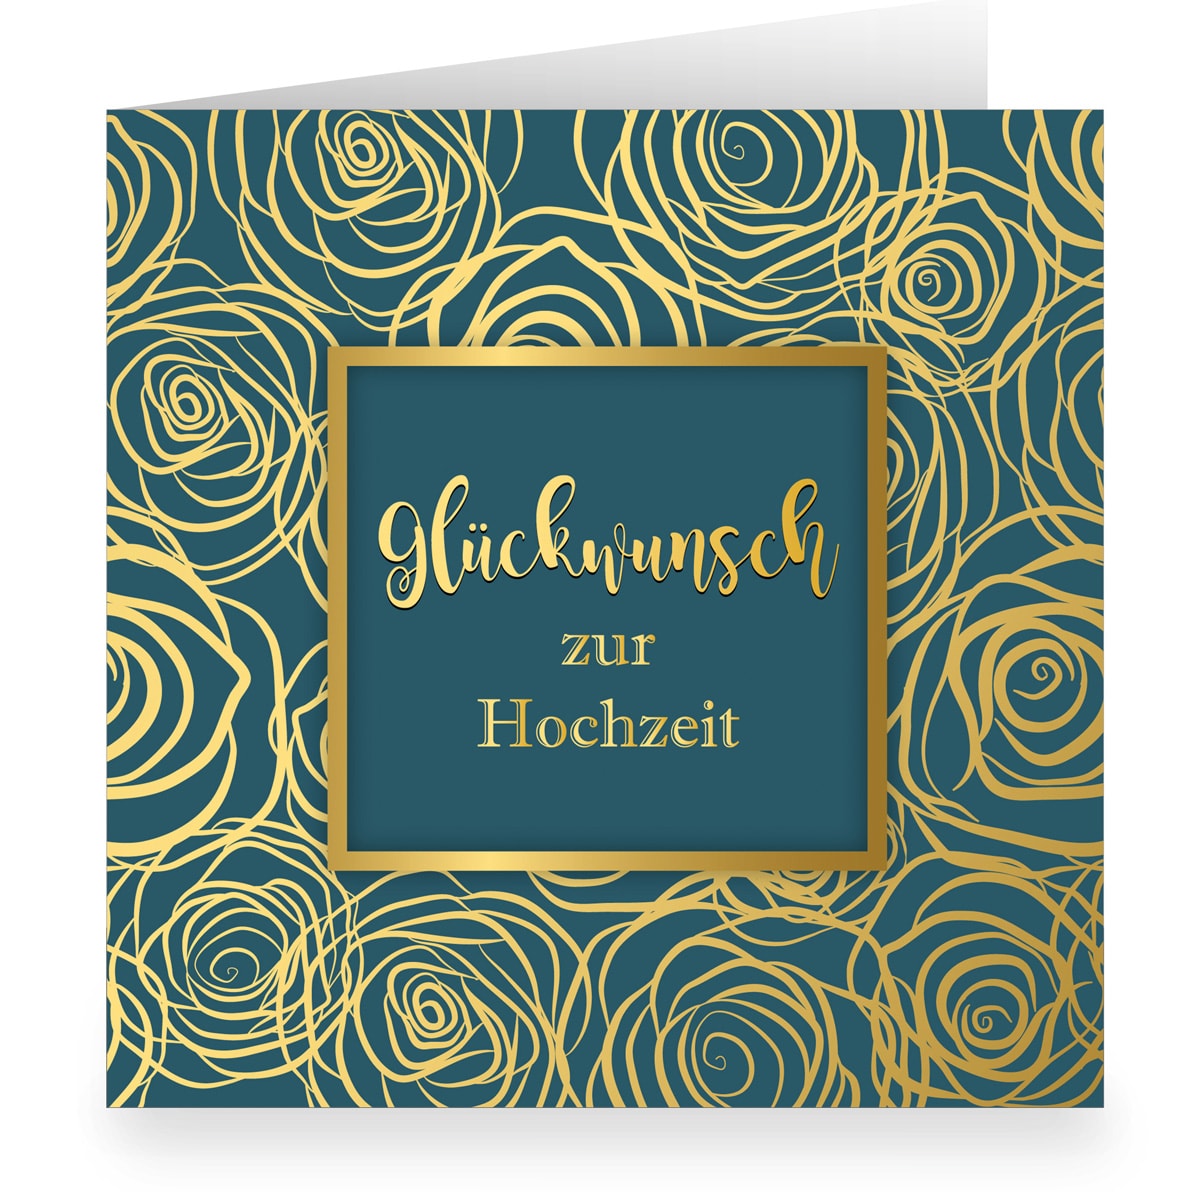 Kartenkaufrausch: Noble Hochzeitskarte mit Rosen aus unserer Hochzeits Papeterie in dunkel blau